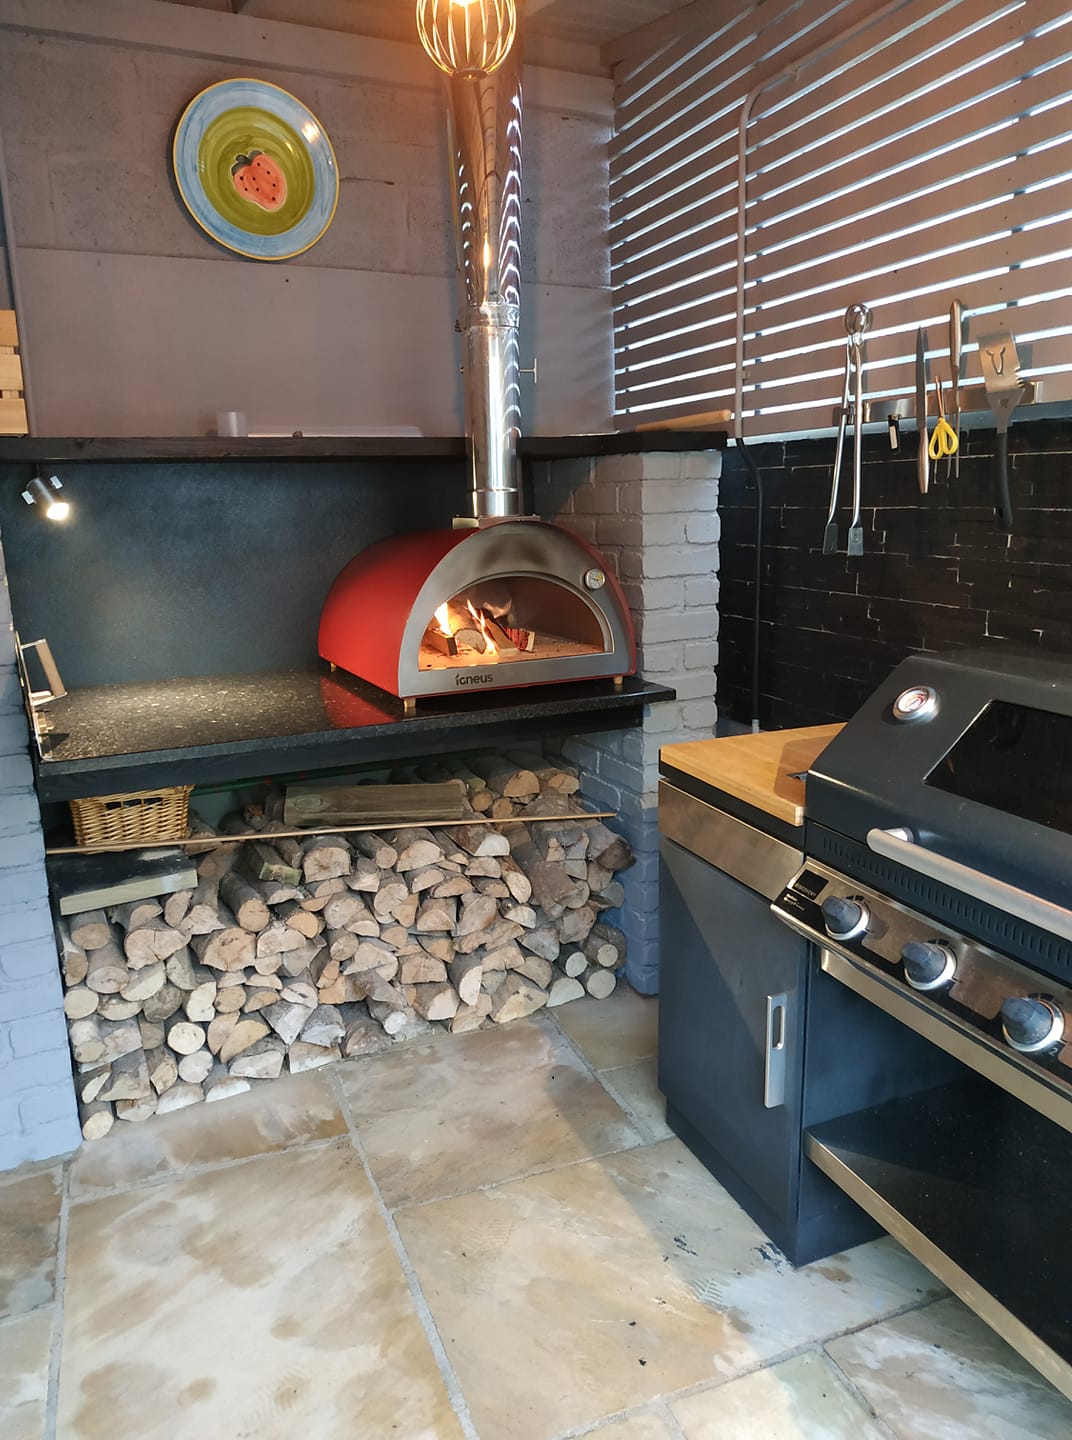 Igneus Classico pizza oven